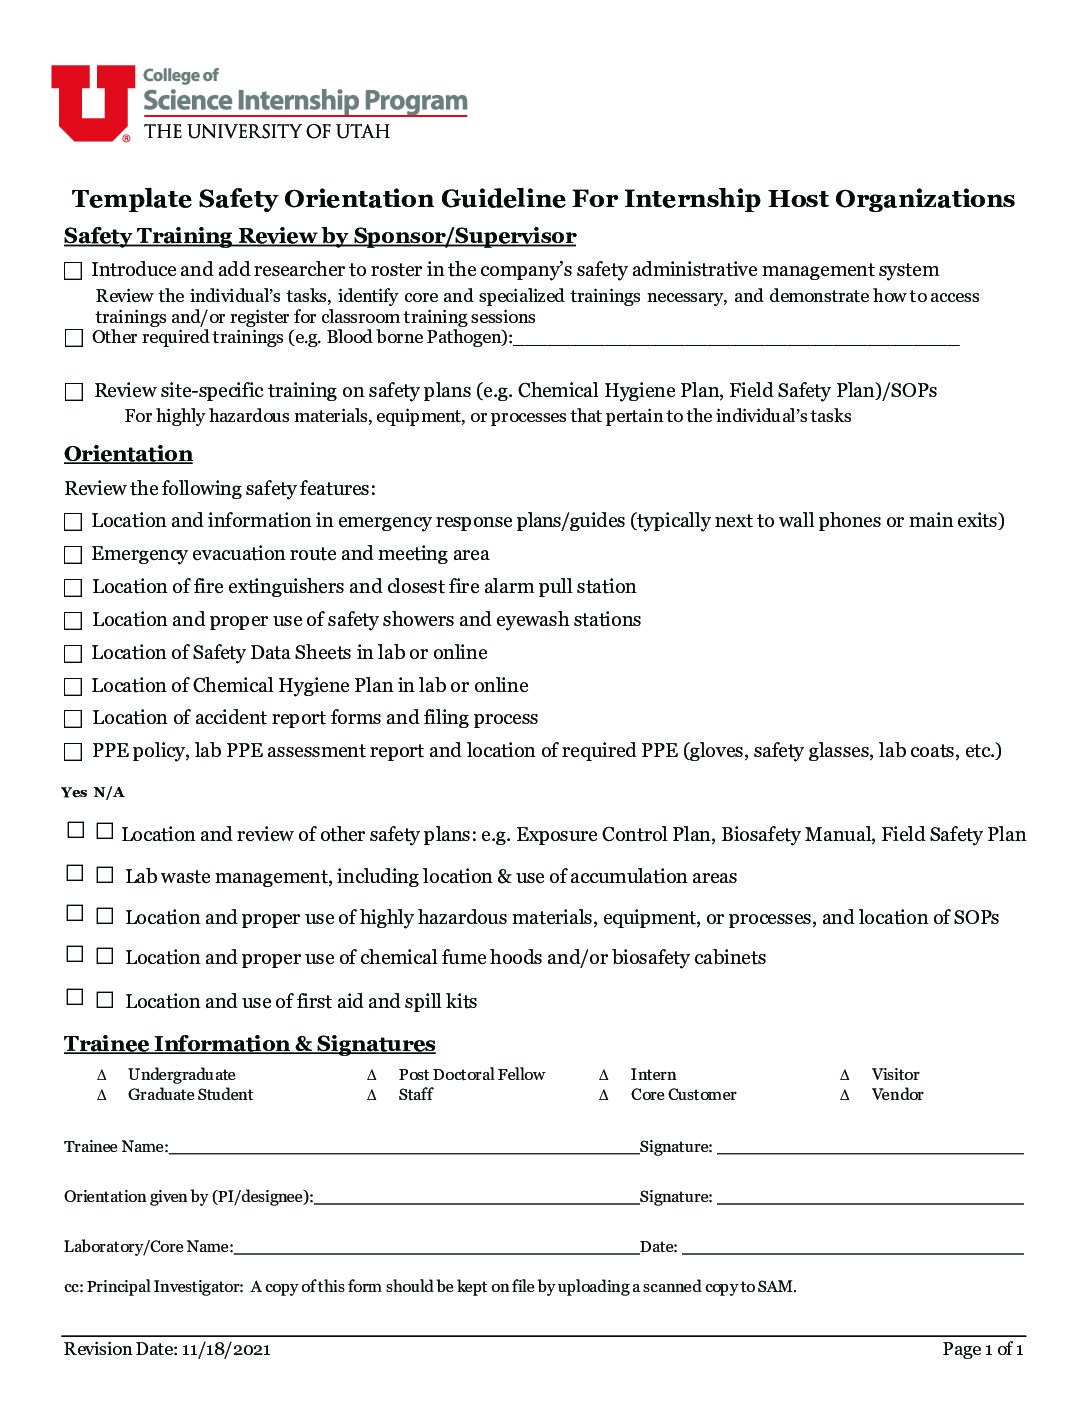 safety-checklist-template